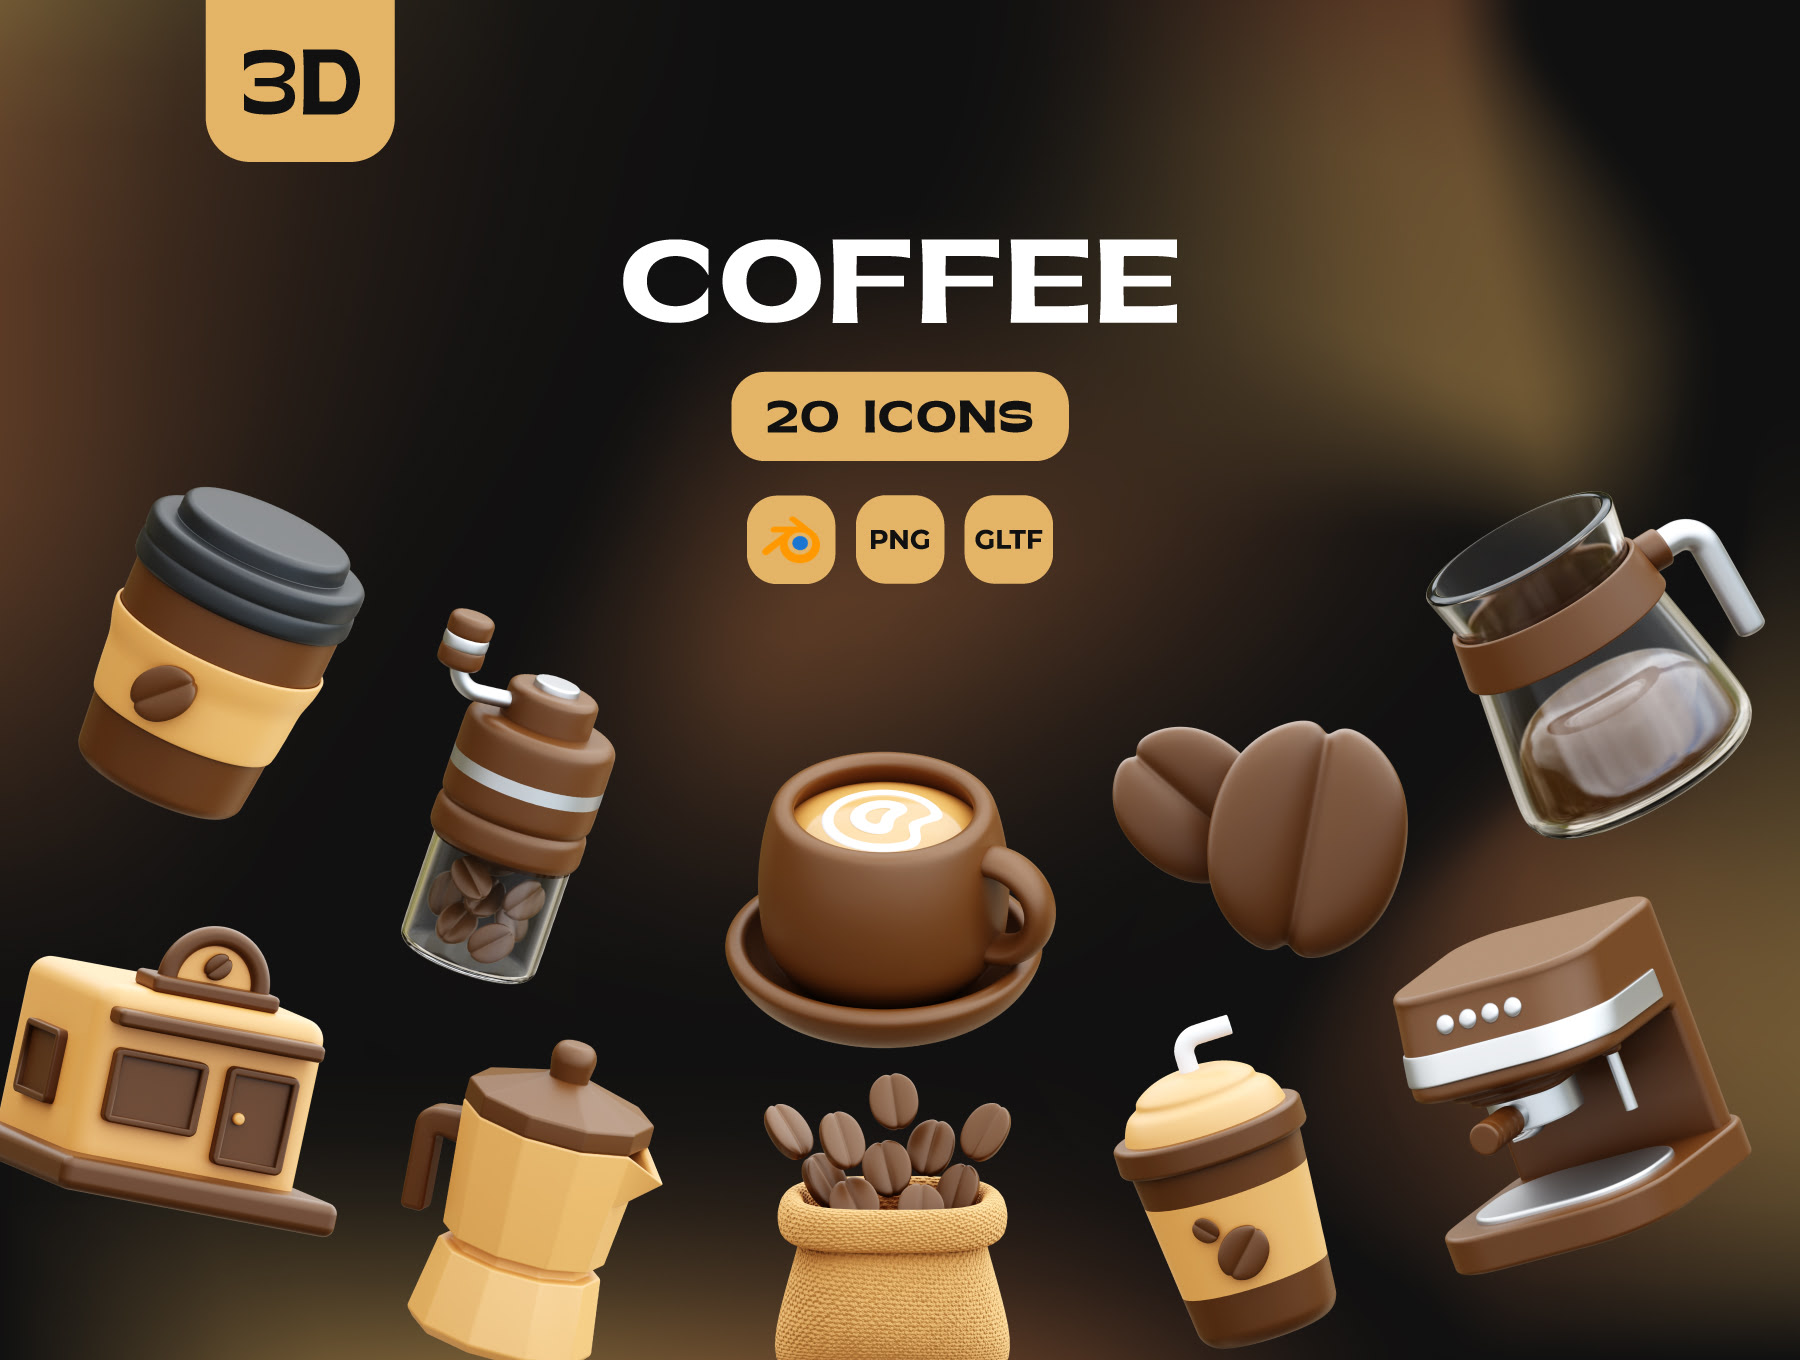 咖啡3D图标 Coffee 3D Icons blender, figma格式-3D/图标-到位啦UI